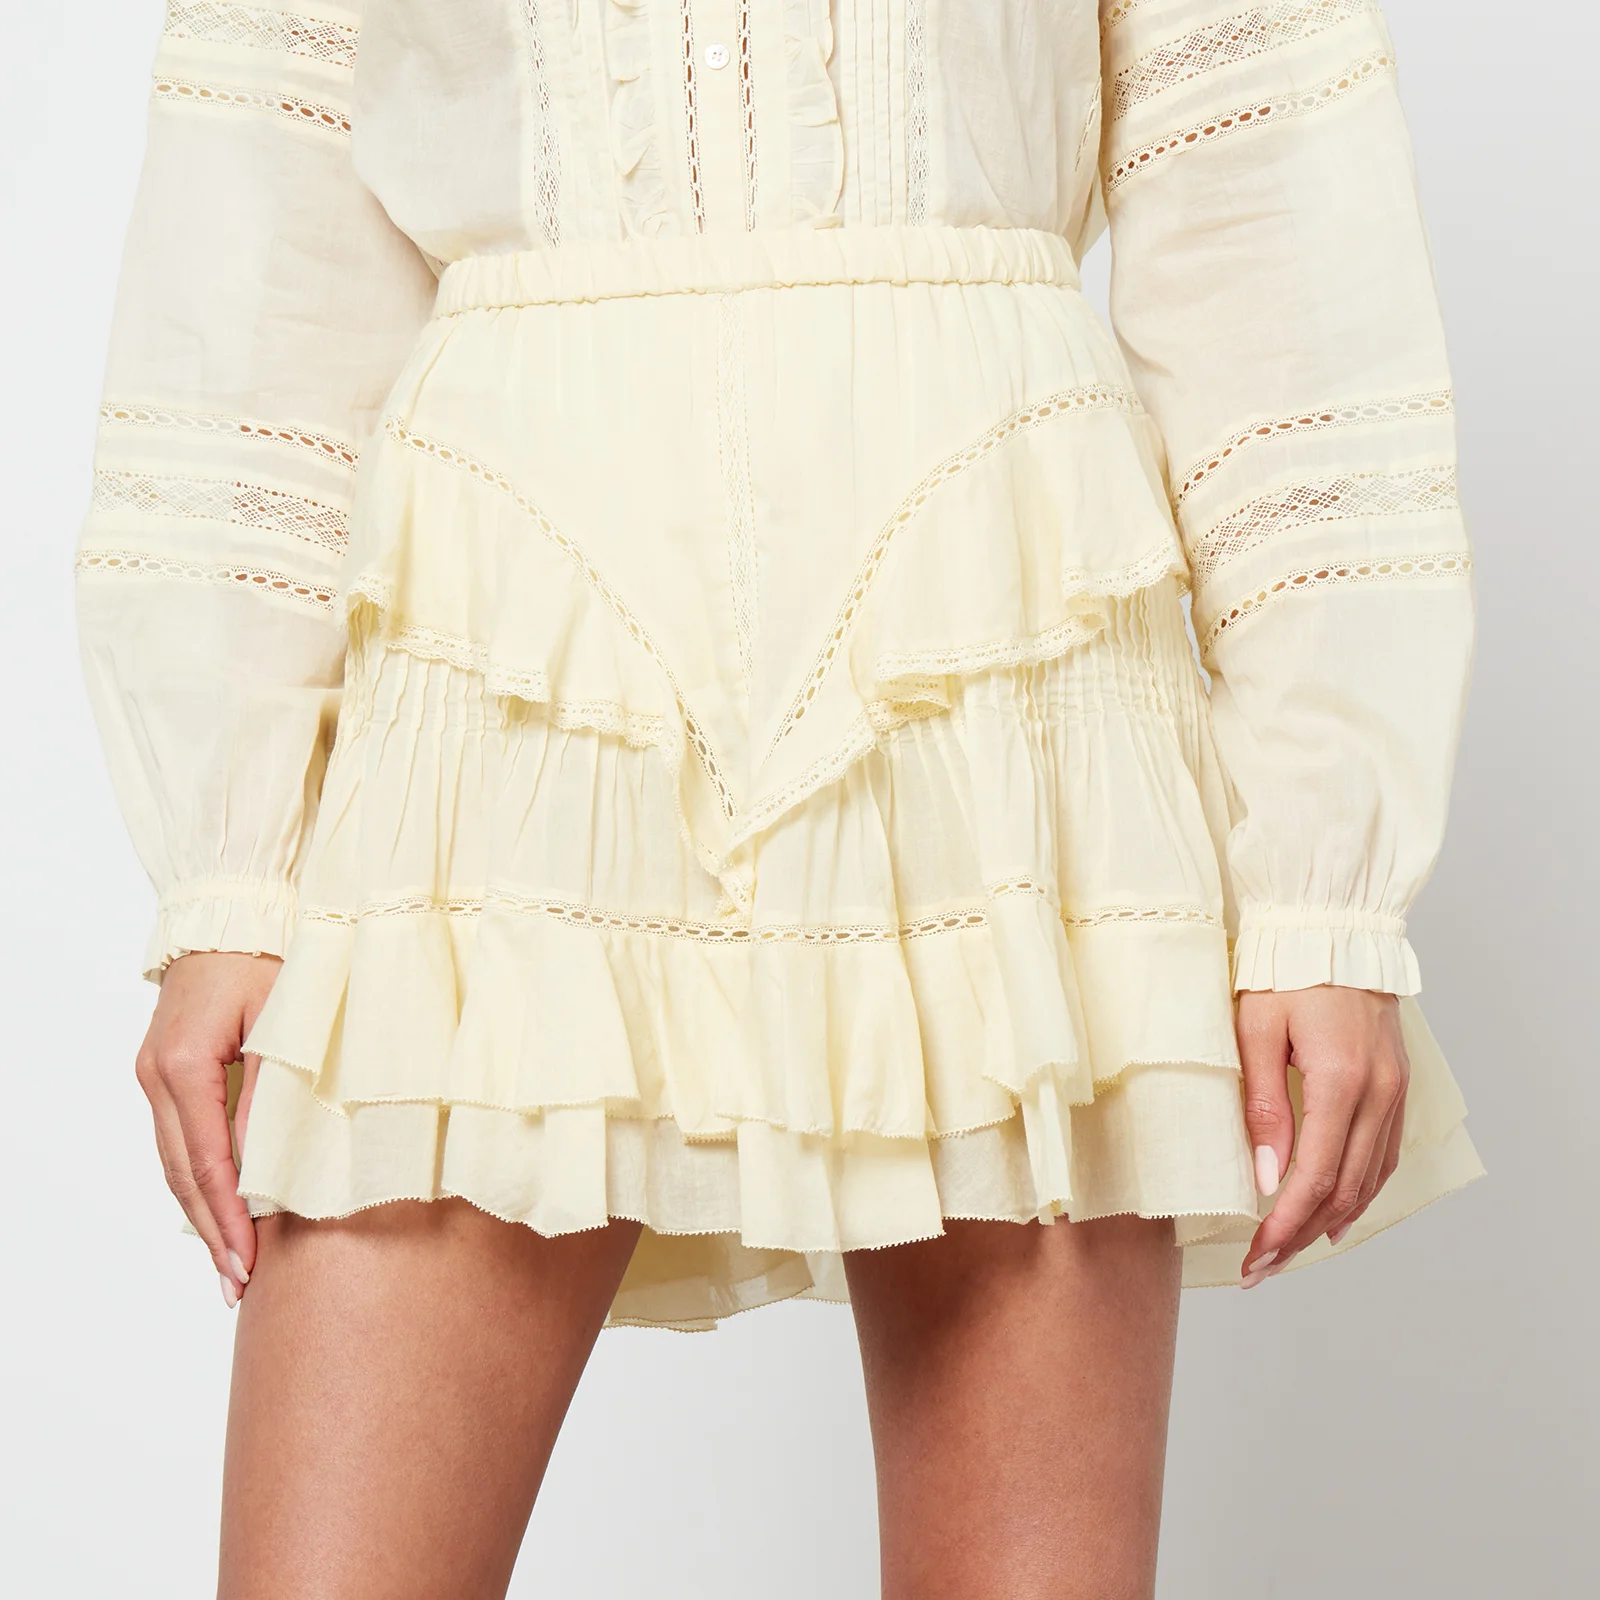 Marant Etoile Moana Frill Cotton-Gauze Skirt Image 1